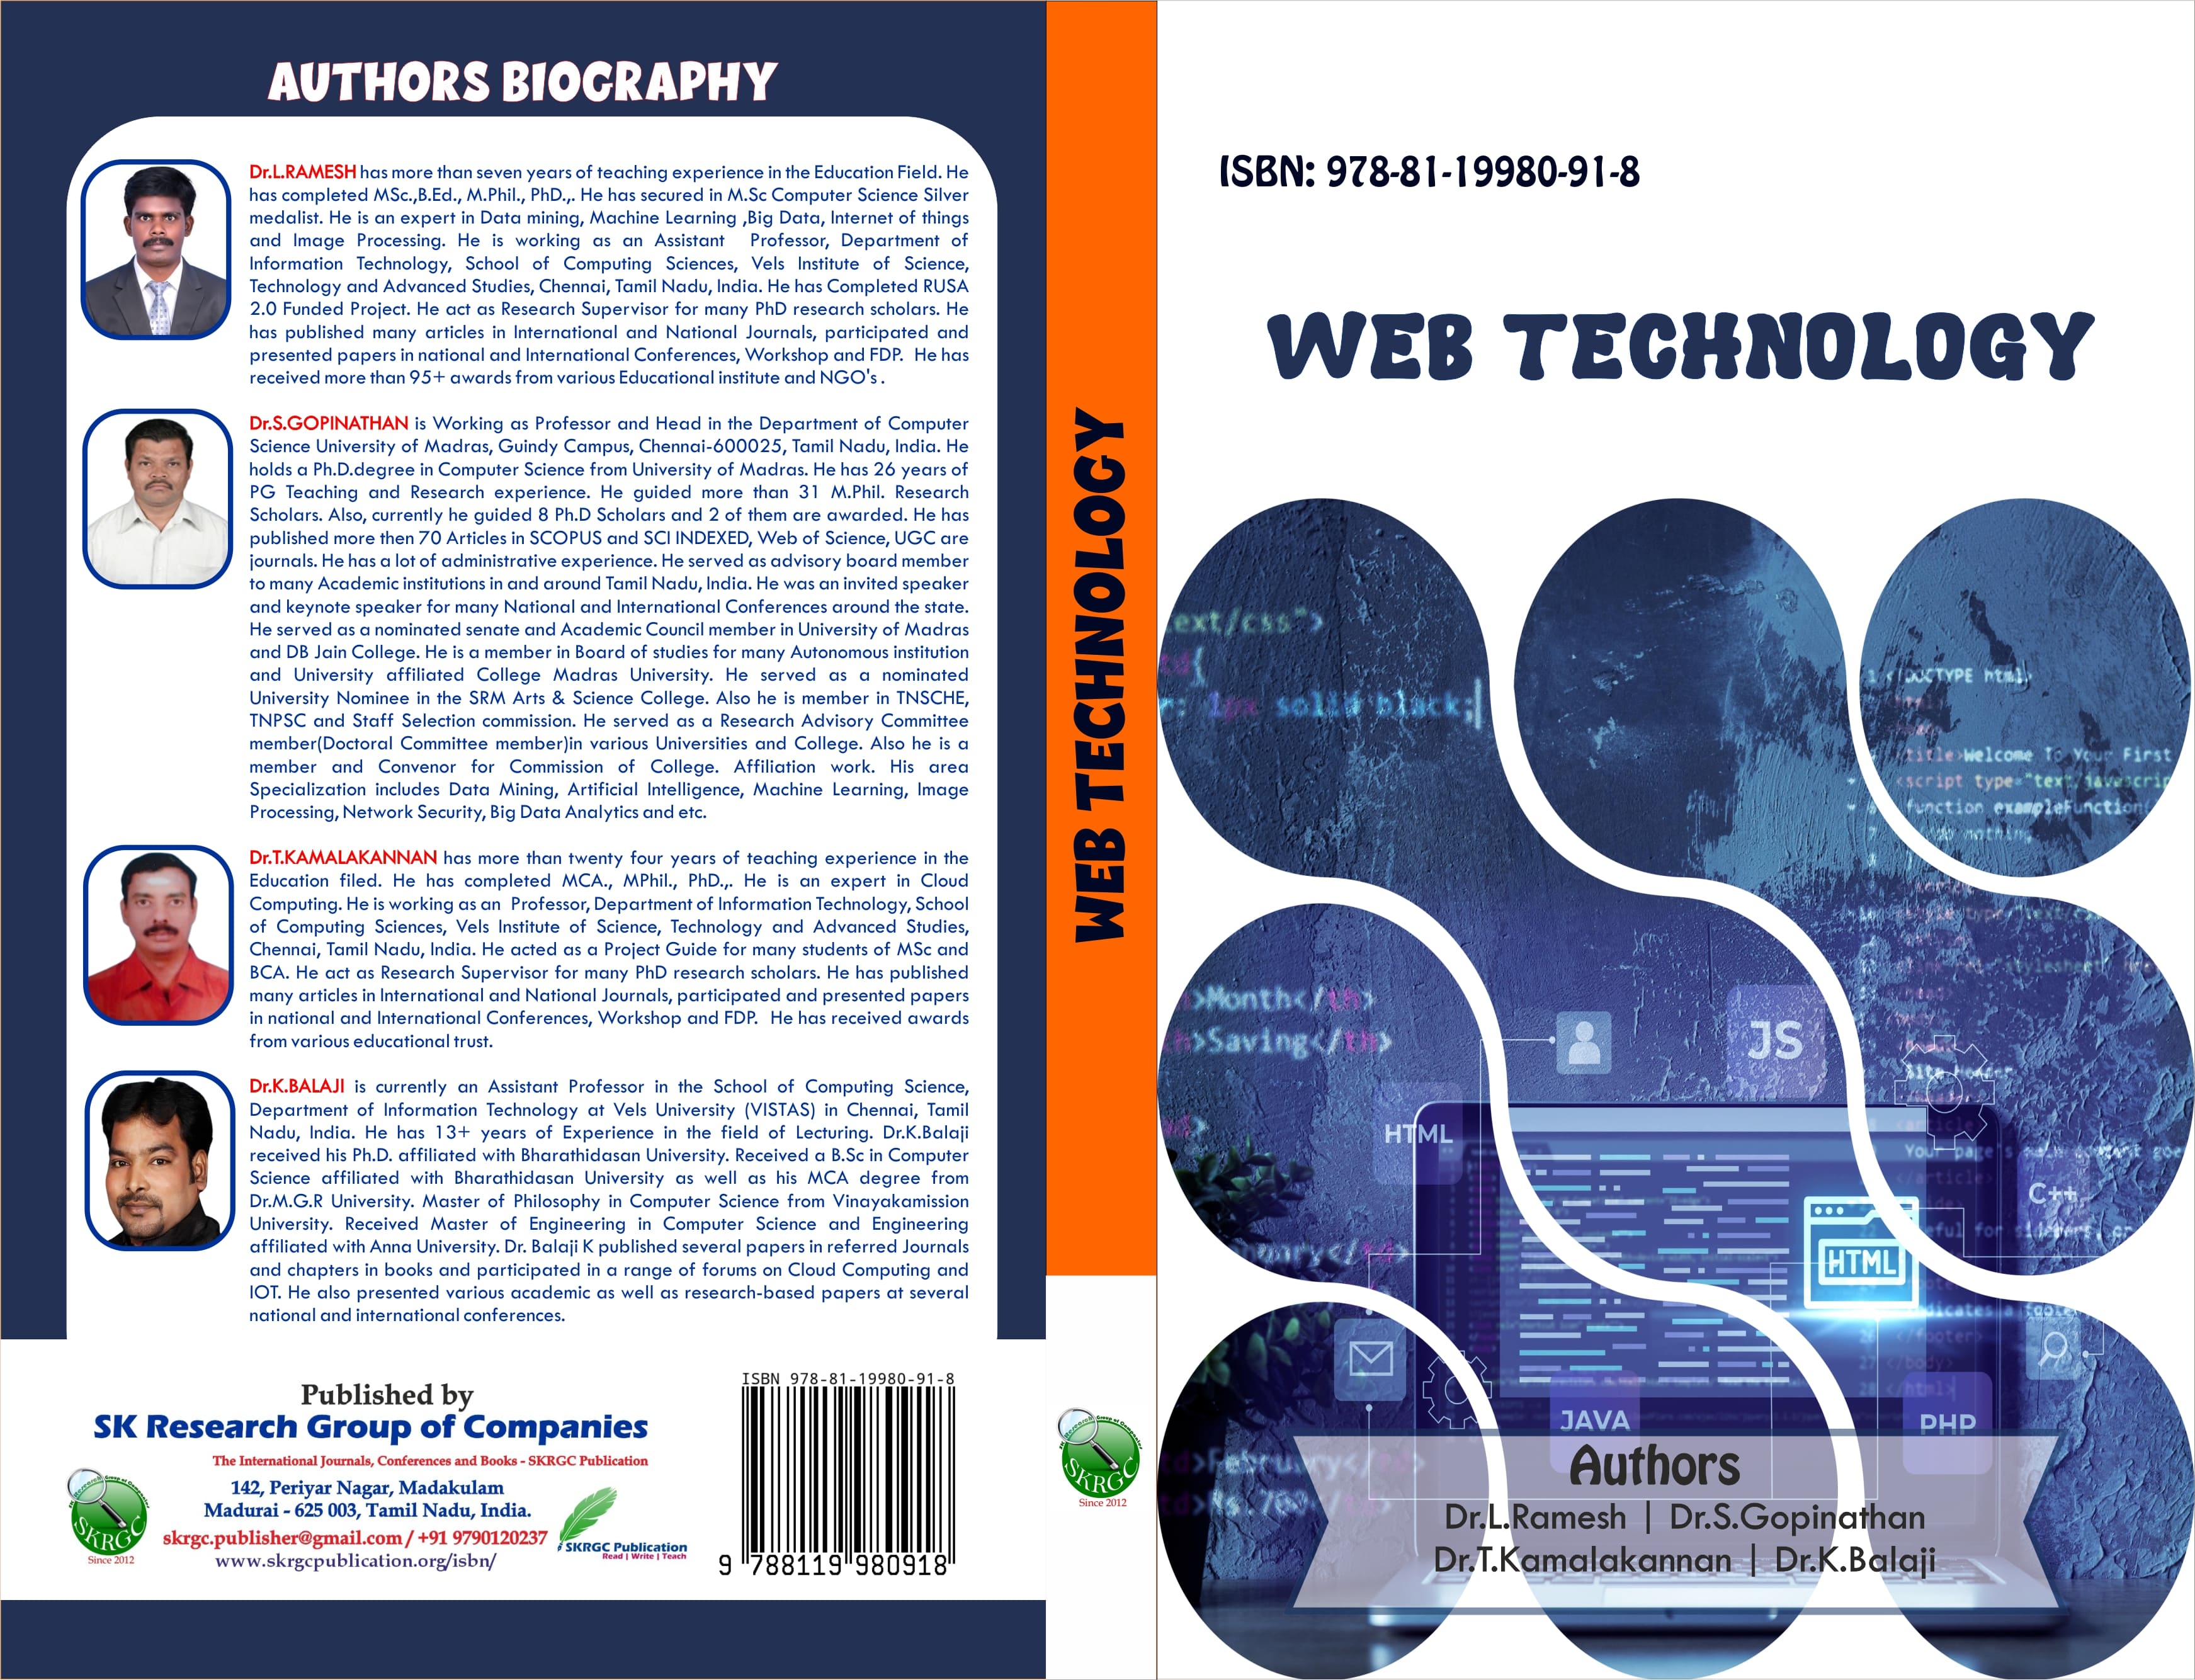 WEB TECHNOLOGY